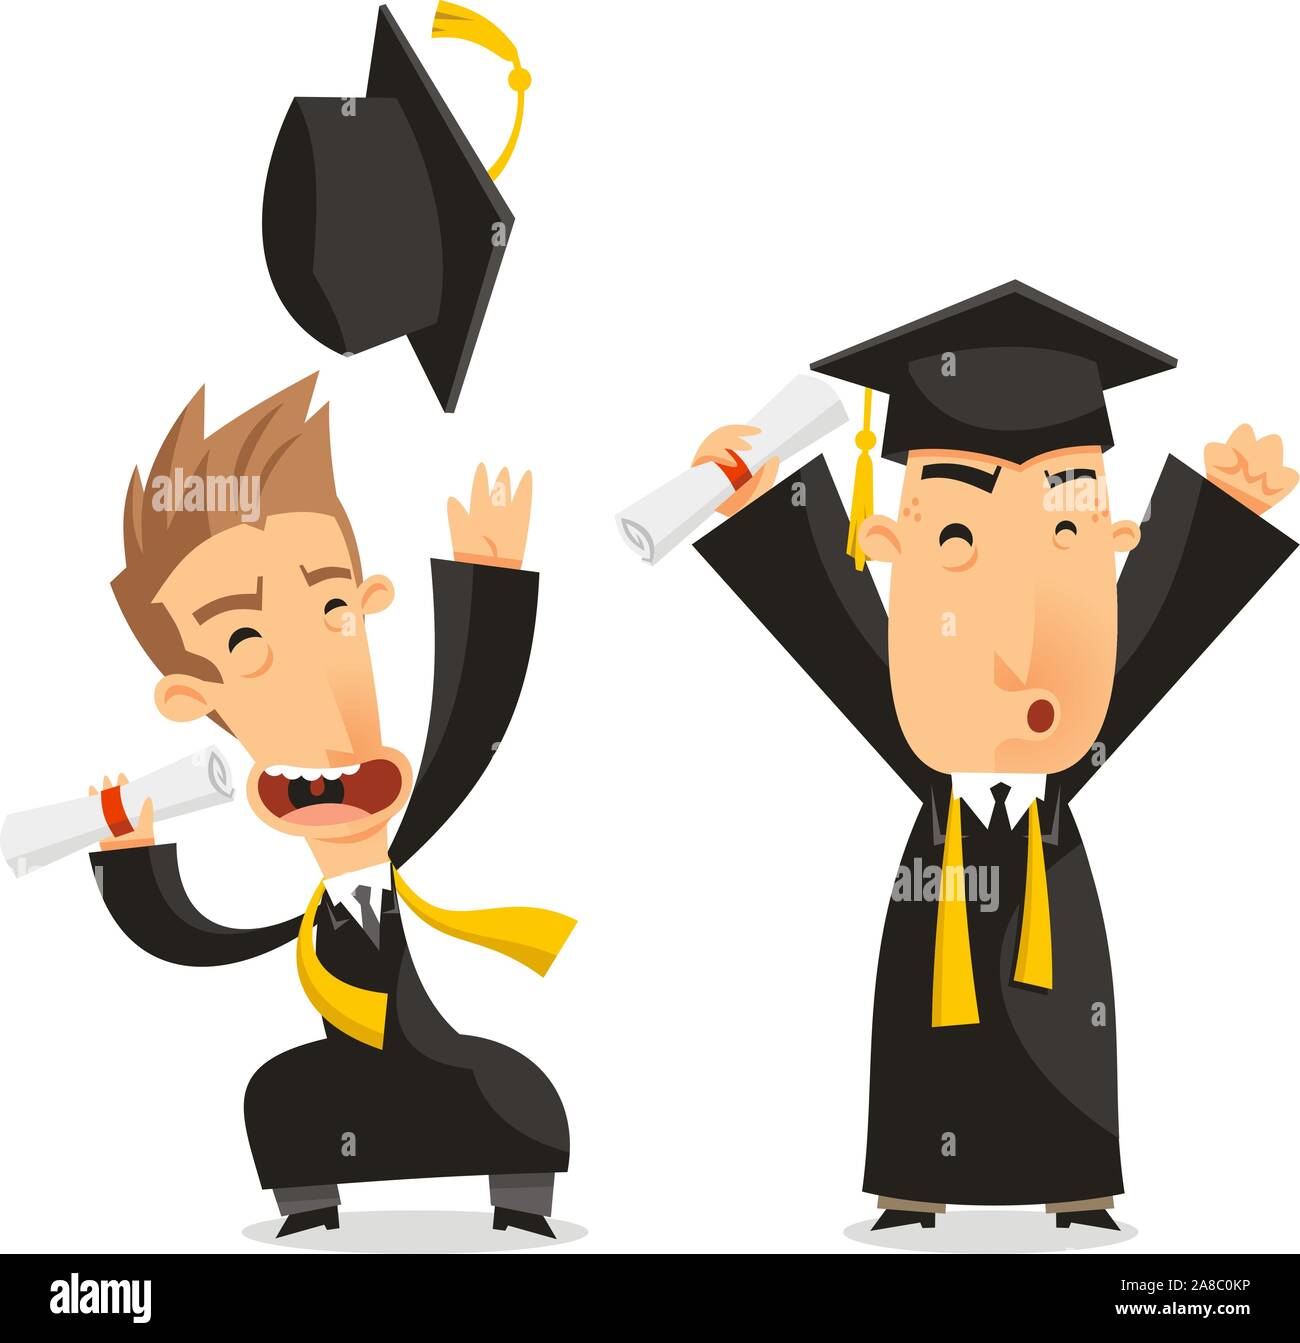 Diplôme universitaire de baccalauréat diplômés, vector illustration cartoon. Illustration de Vecteur